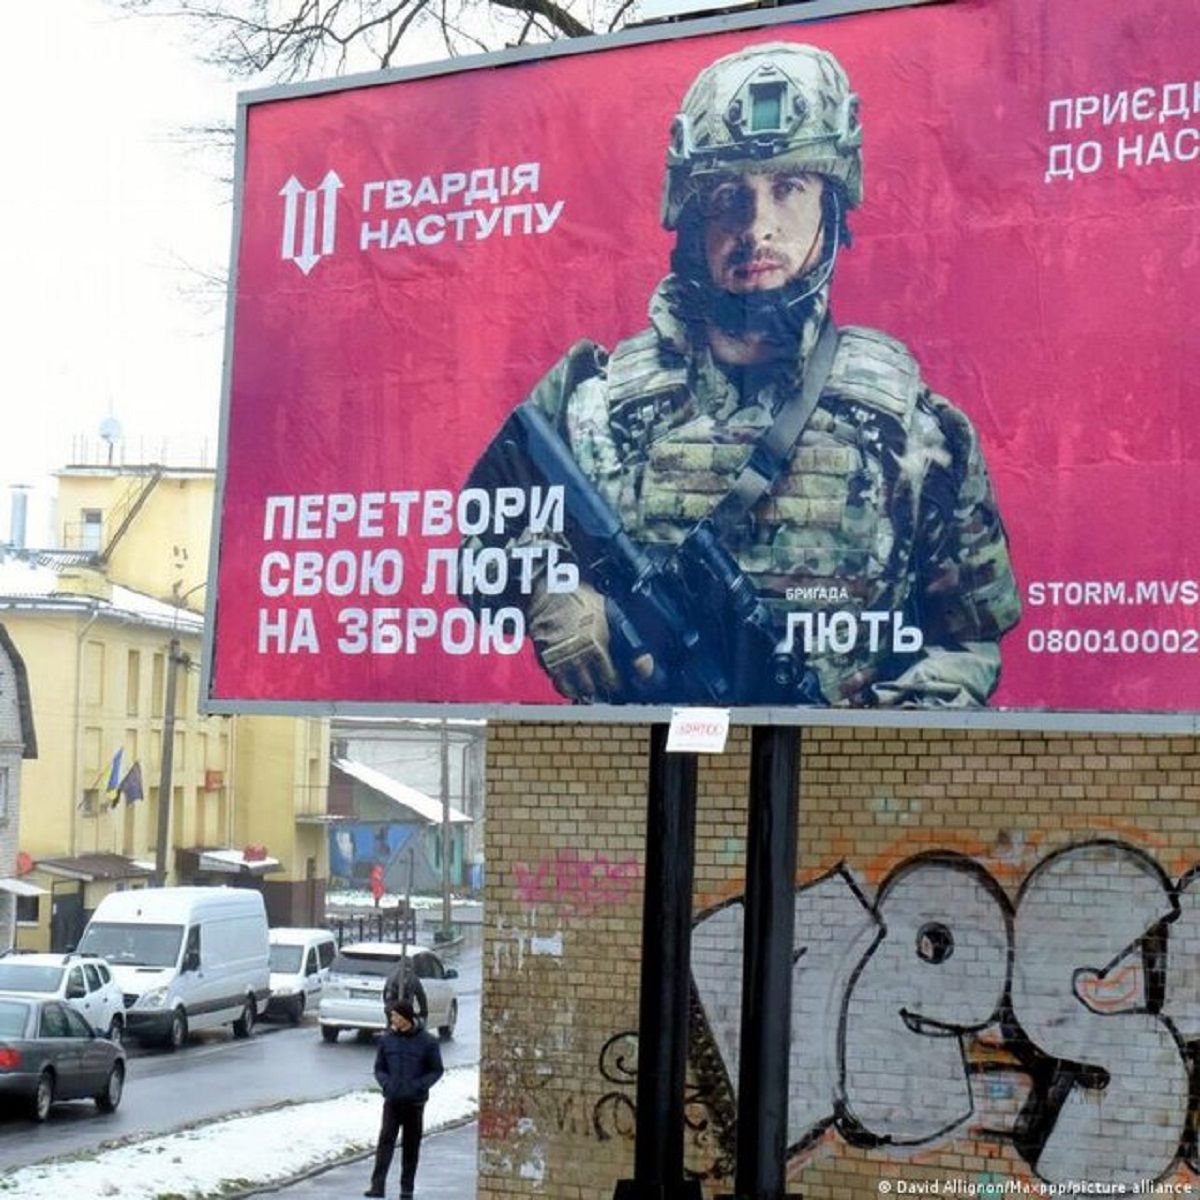 بحران سرباز دامن اوکراین را گرفت؟/ ادعای تازه درباره فرار سربازان اوکراینی از جنگ